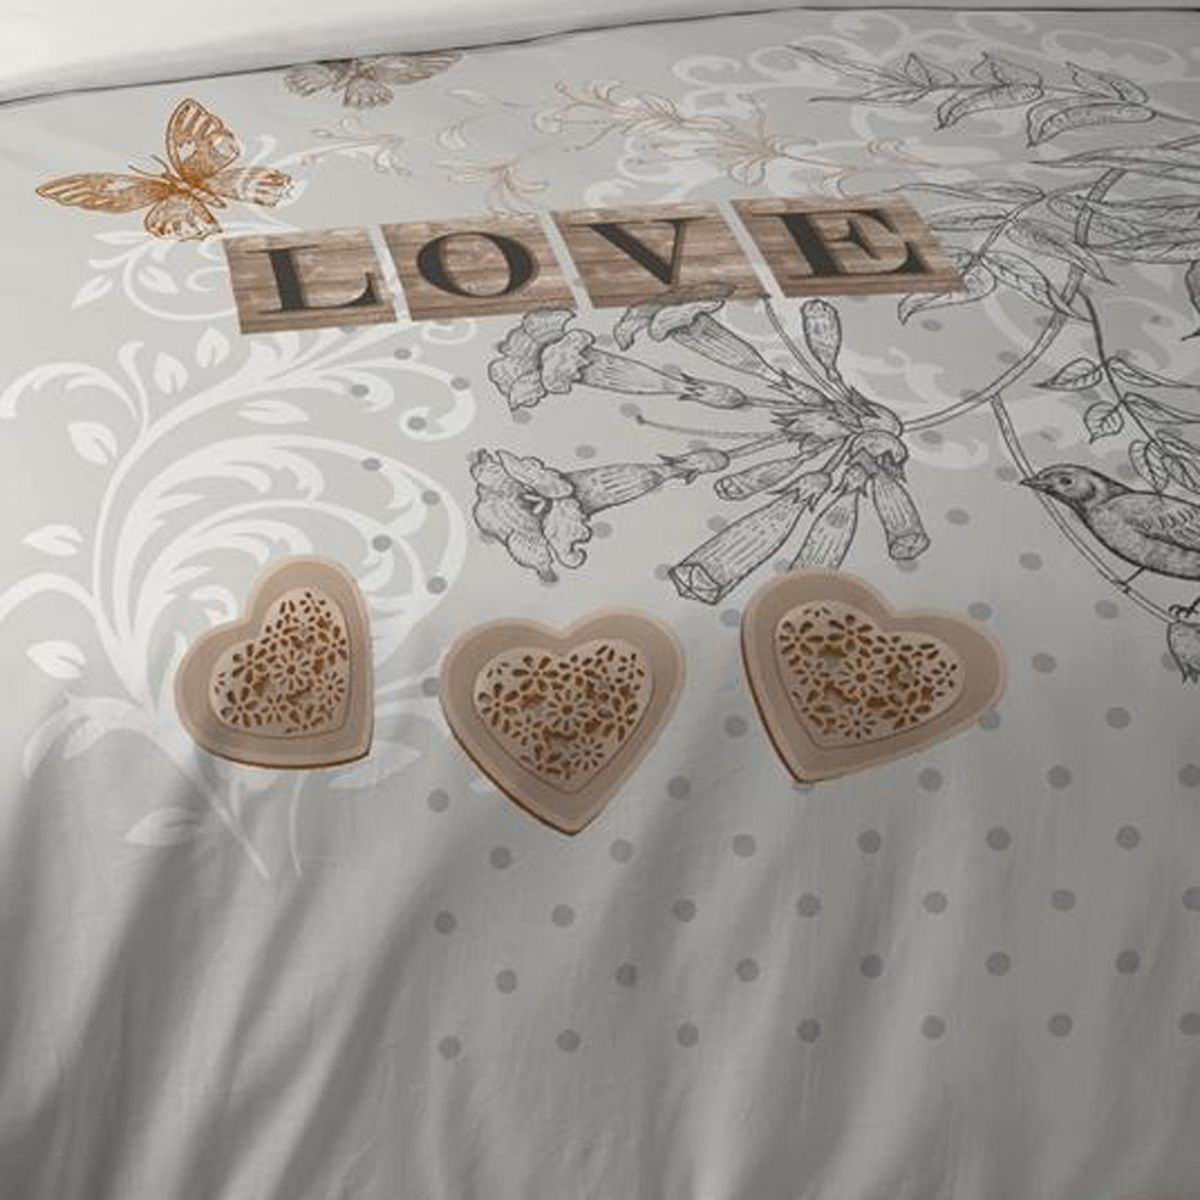 CLEMENCE Charming Dekor Bedclothes 260 x 240 cm